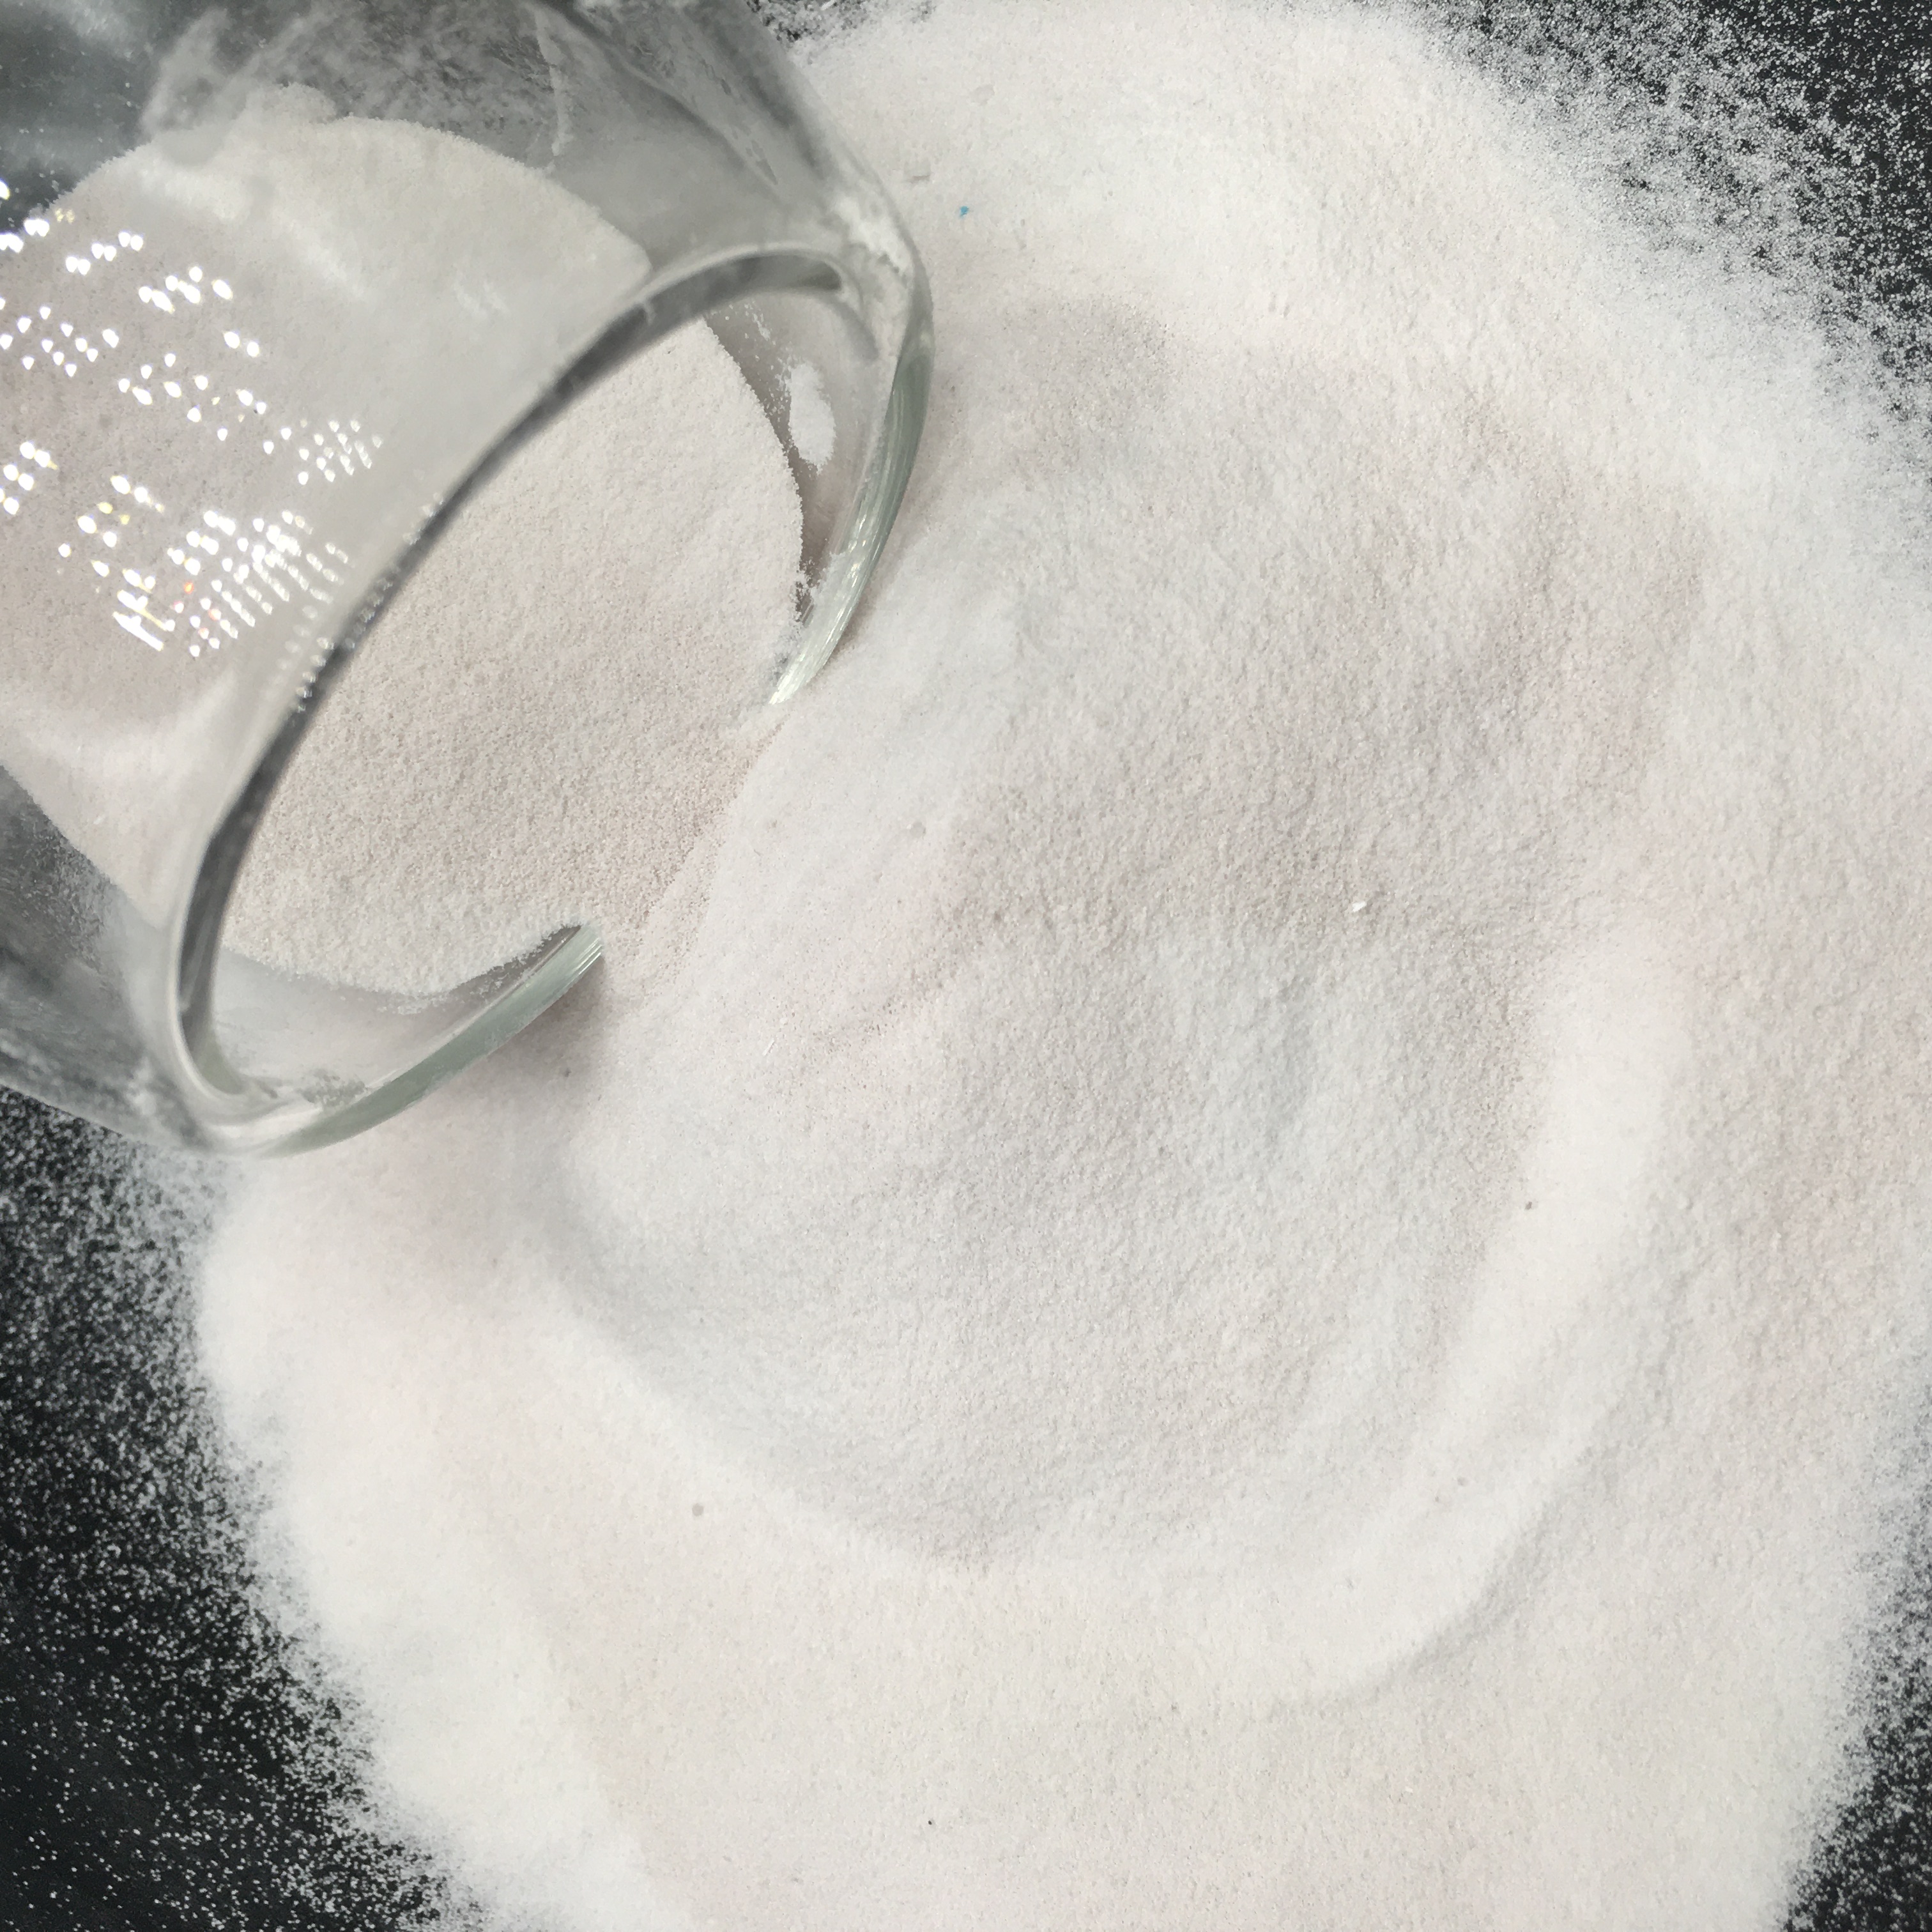 пищевые добавки пищевой порошок сульфата марганца гранулированный 32 e (mnso4h2o) цена